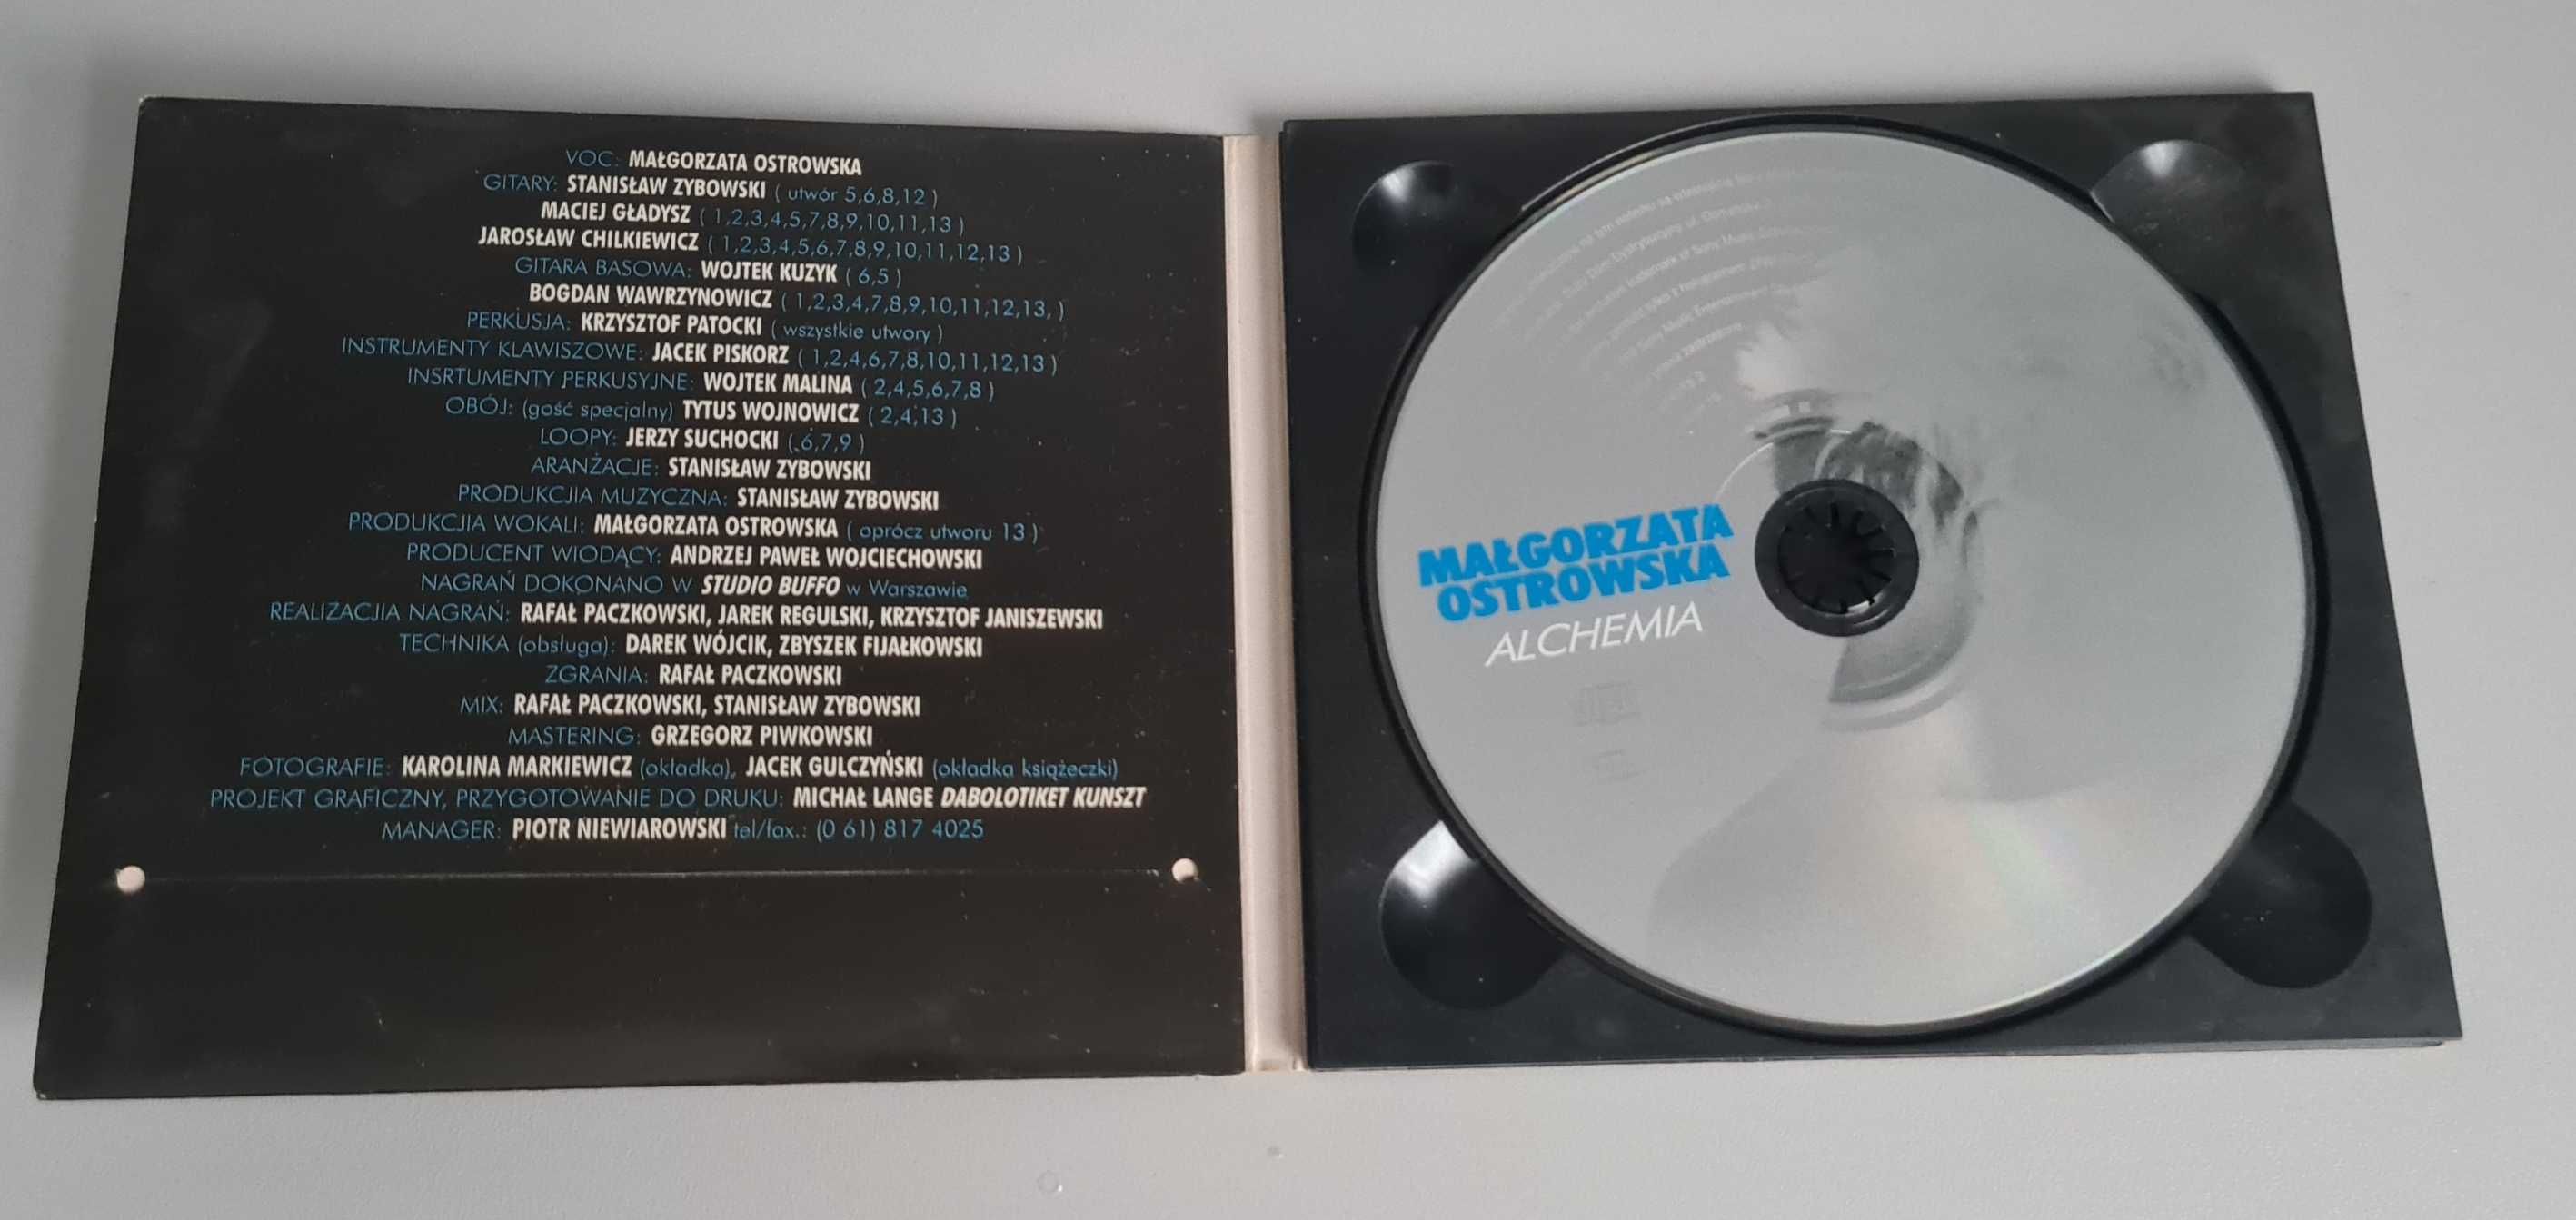 Małgorzata Ostrowska Alchemia  płyta CD